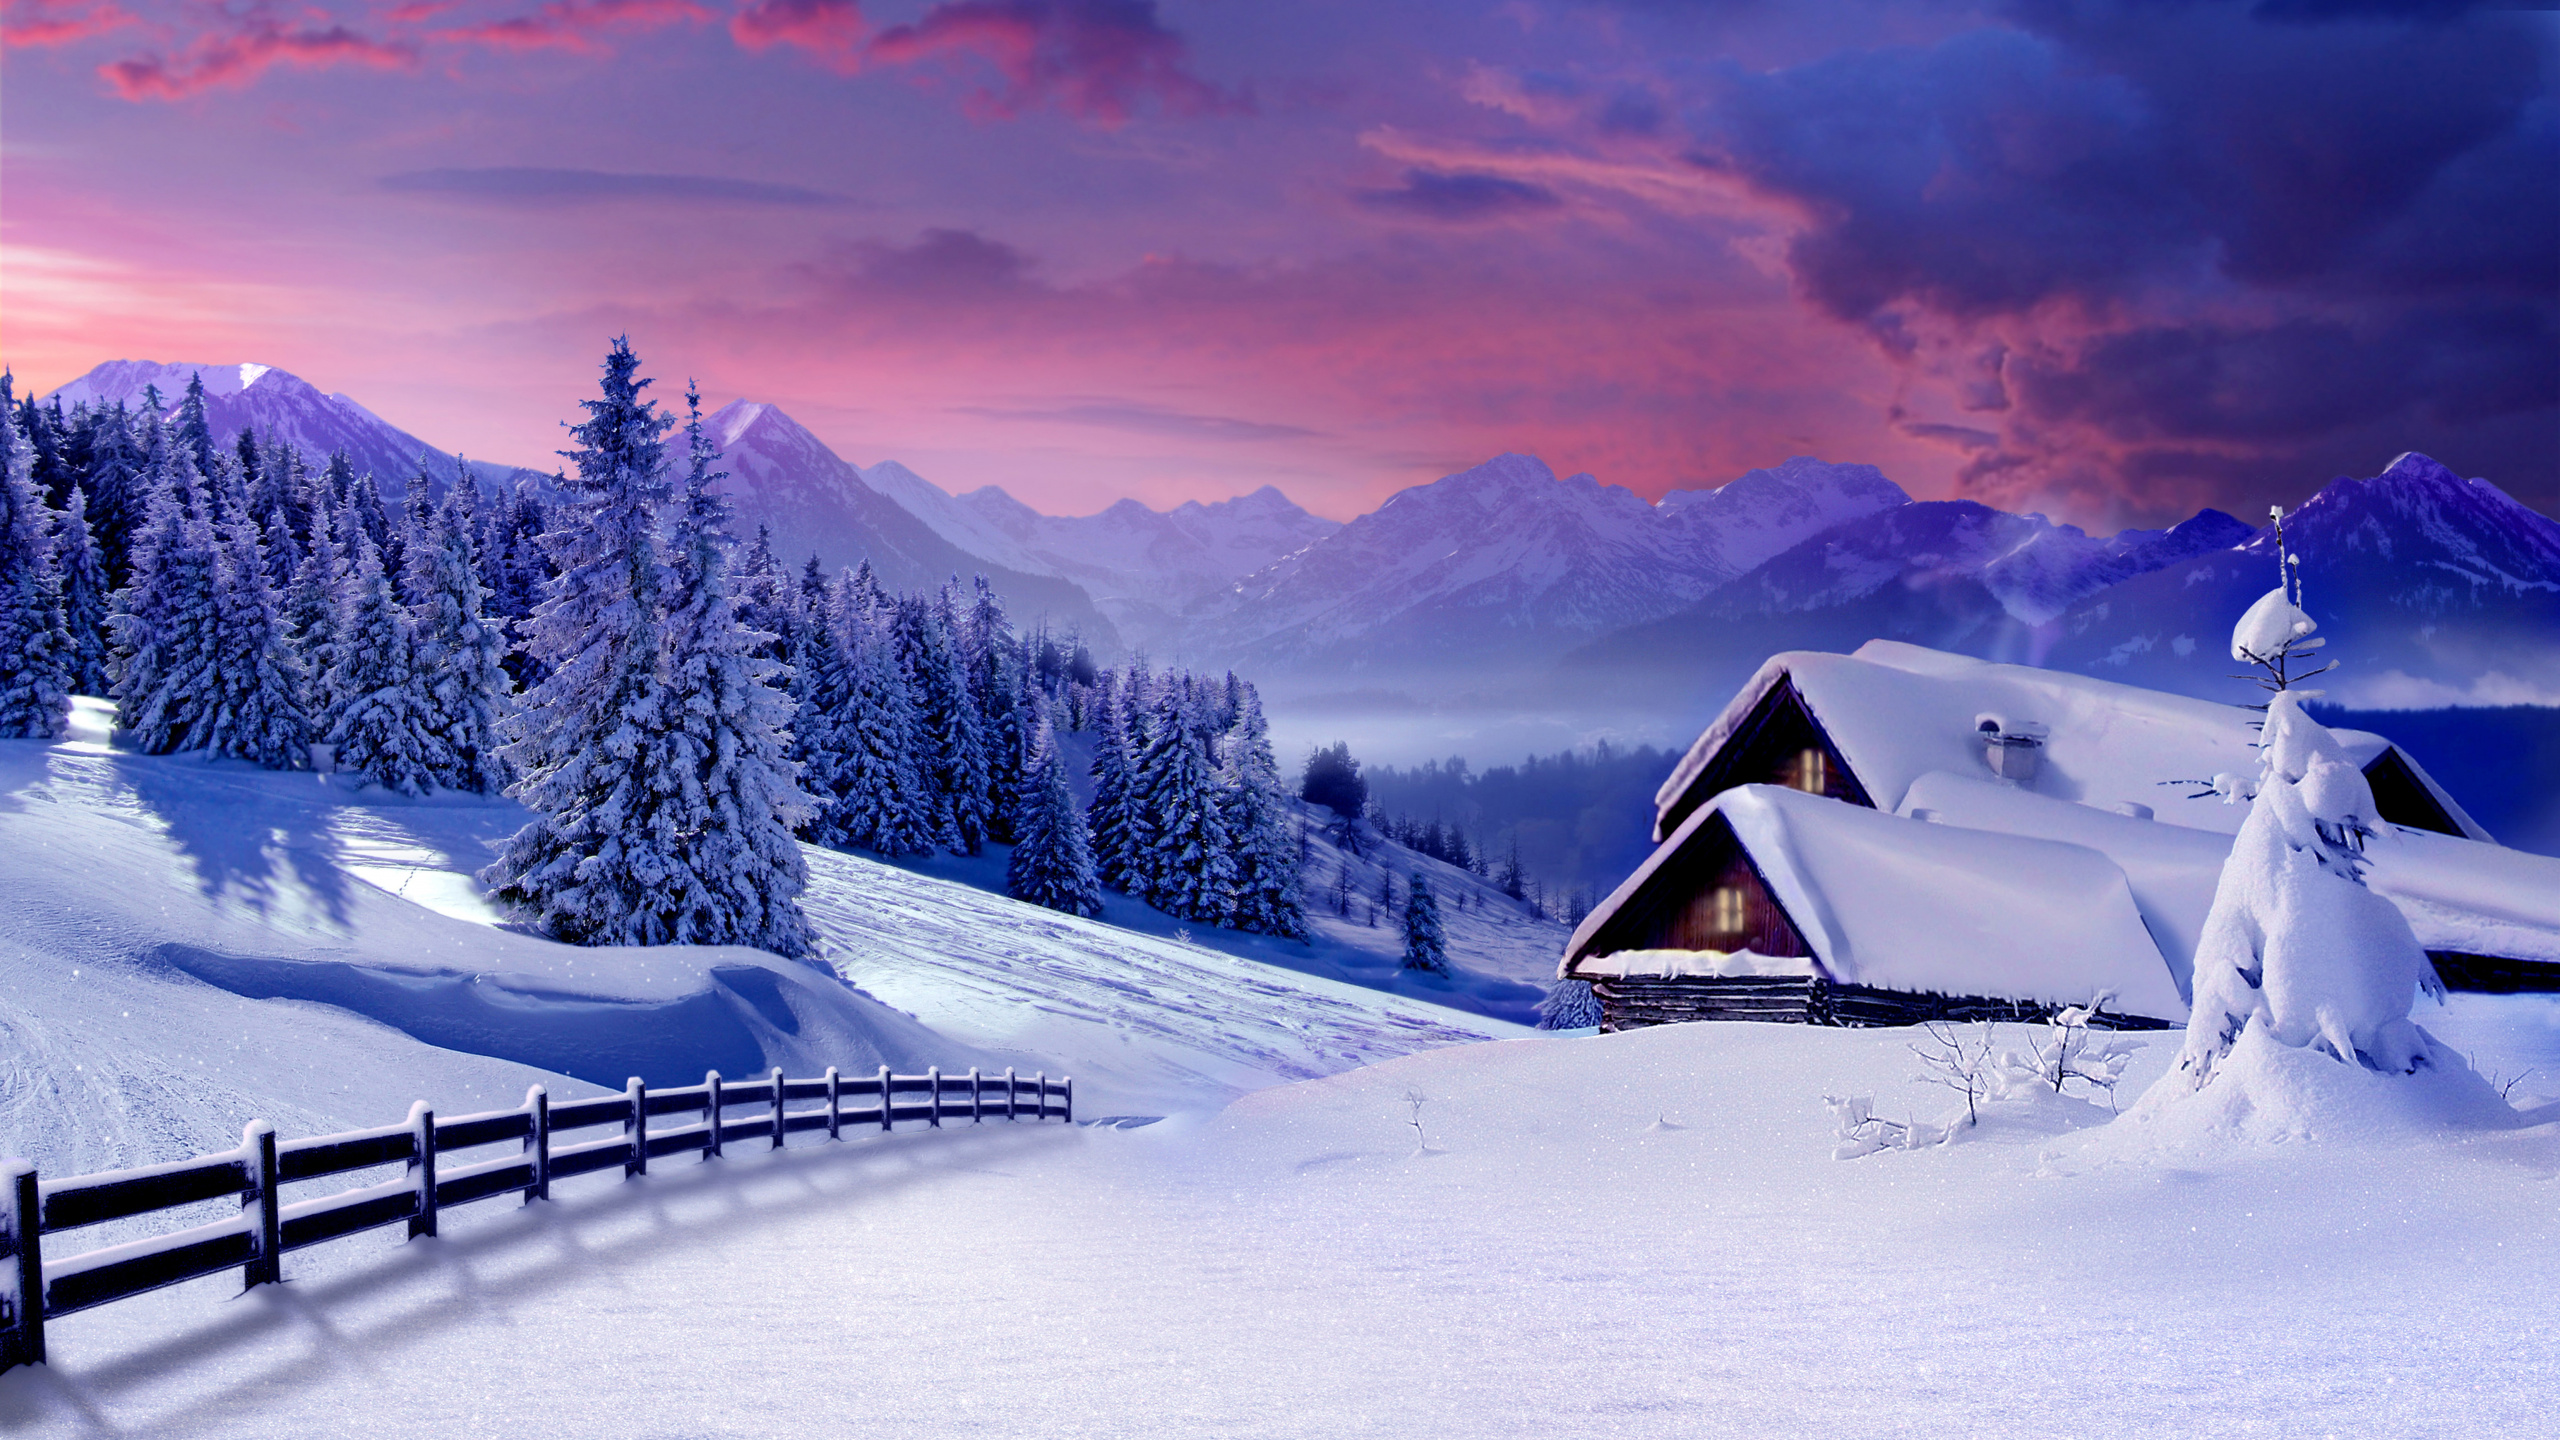 冬天, 性质, 冻结, 山脉, 阿尔卑斯山 壁纸 2560x1440 允许